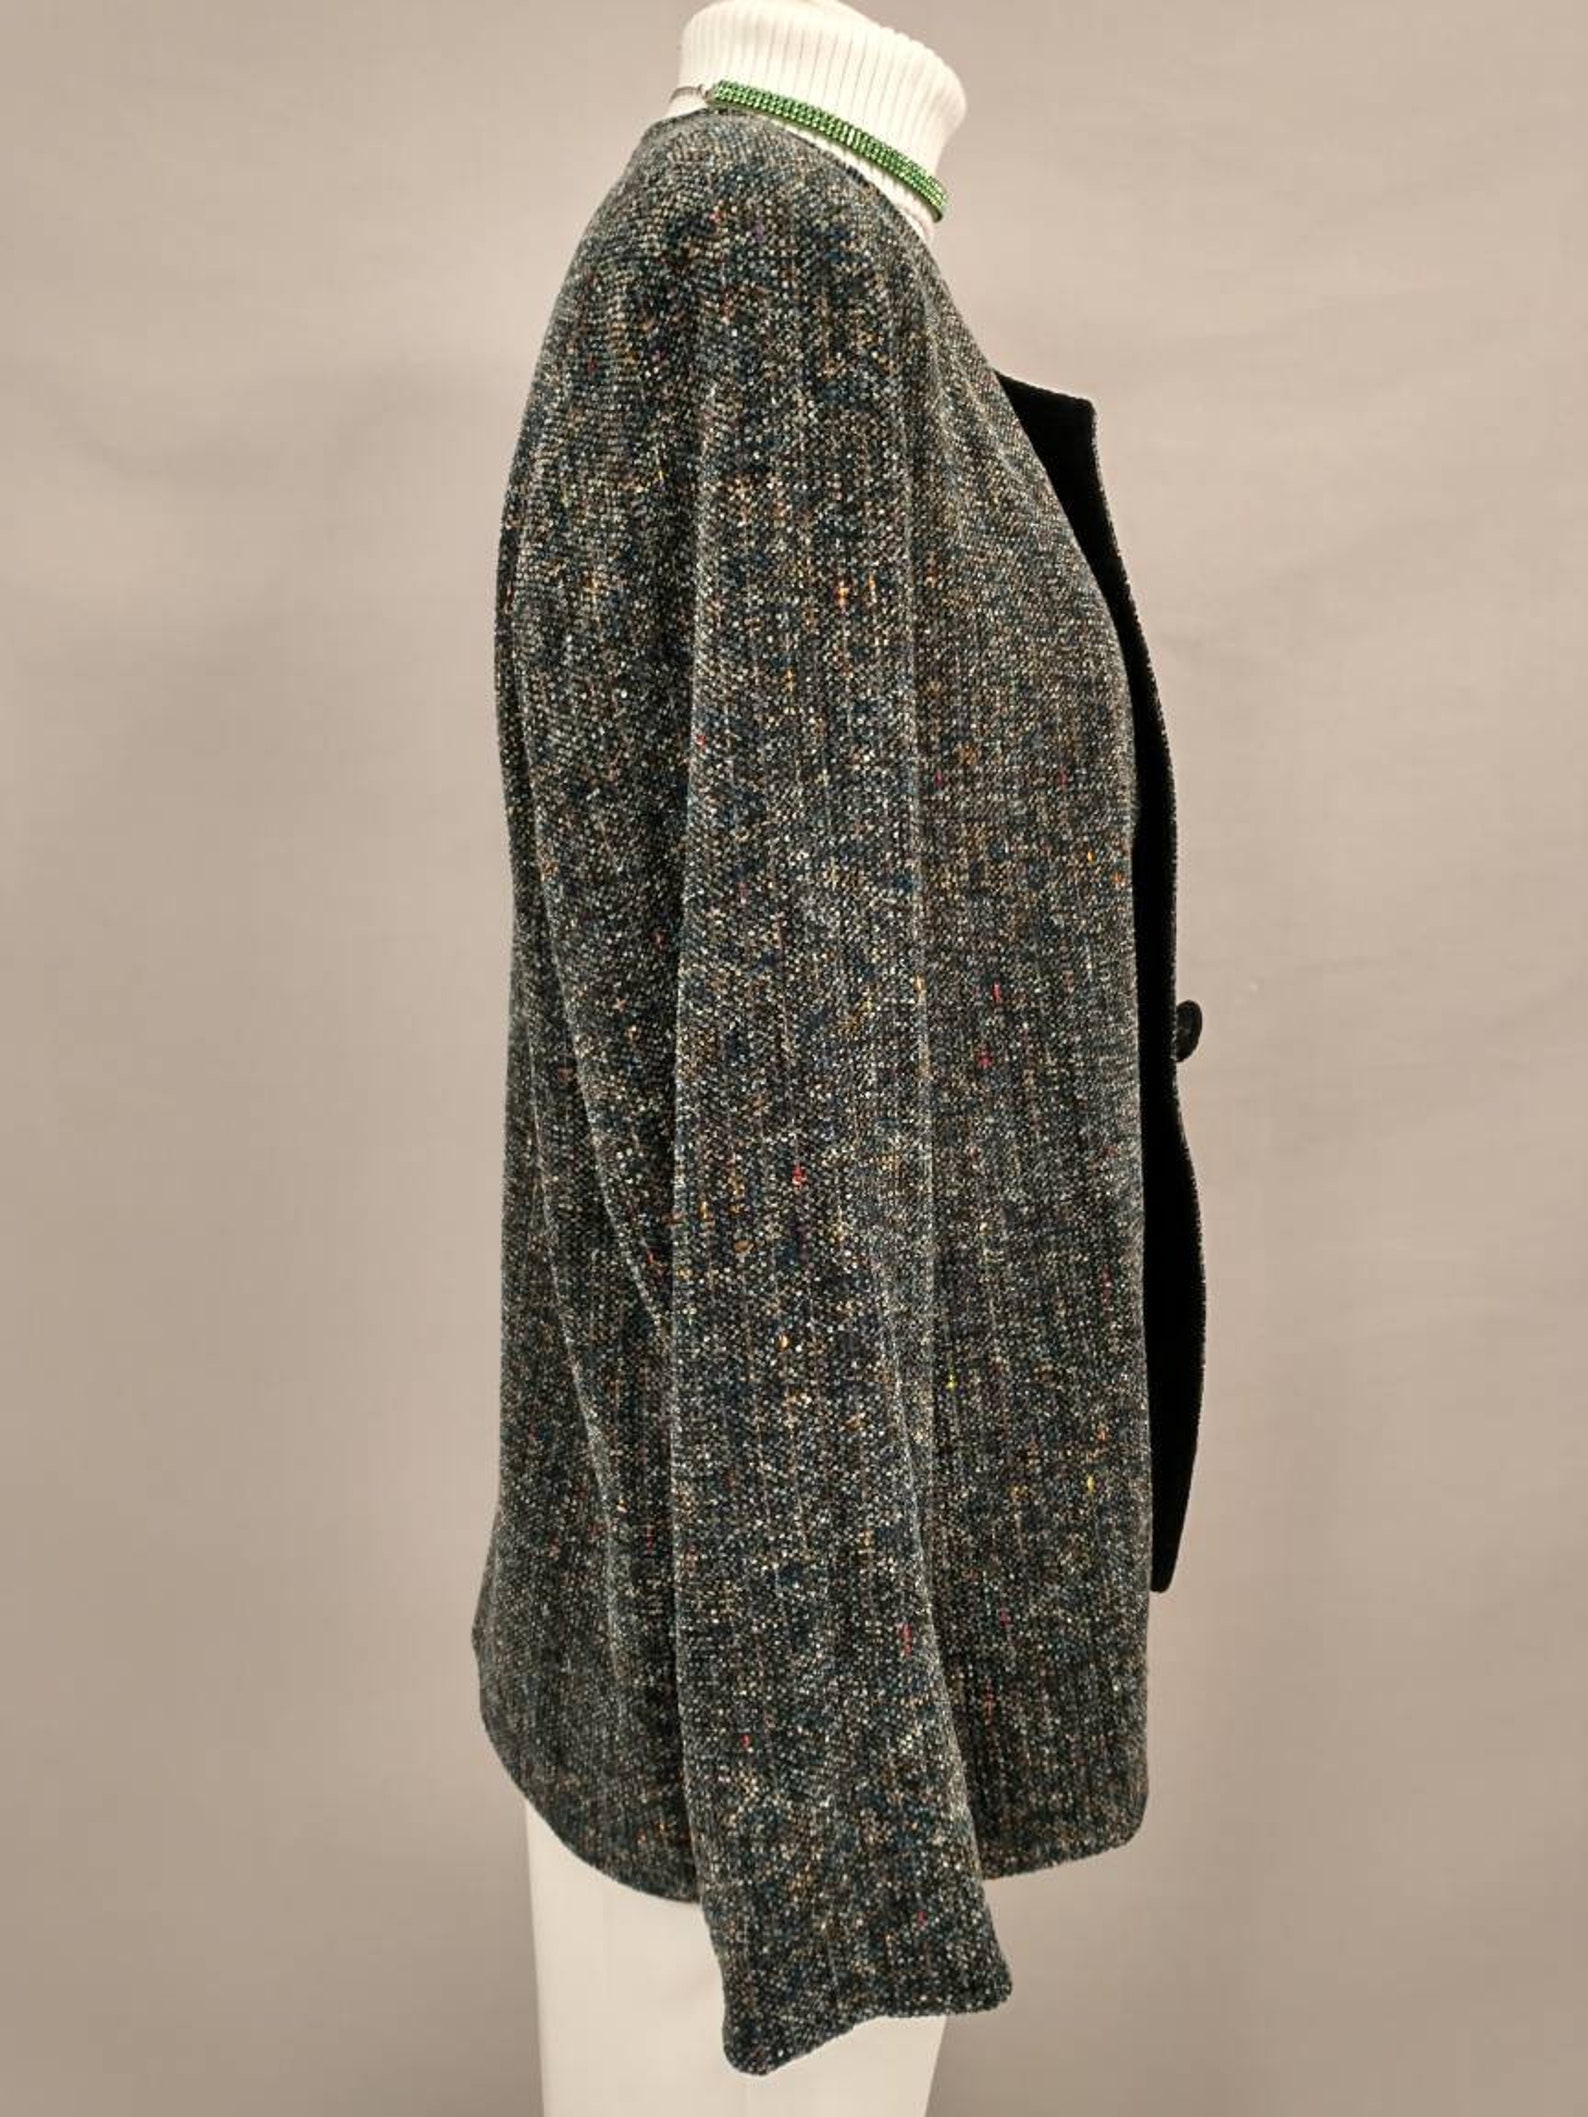 Silk Chenille Jacket by Bibi Stein Handwoven Vintage Unique | Etsy